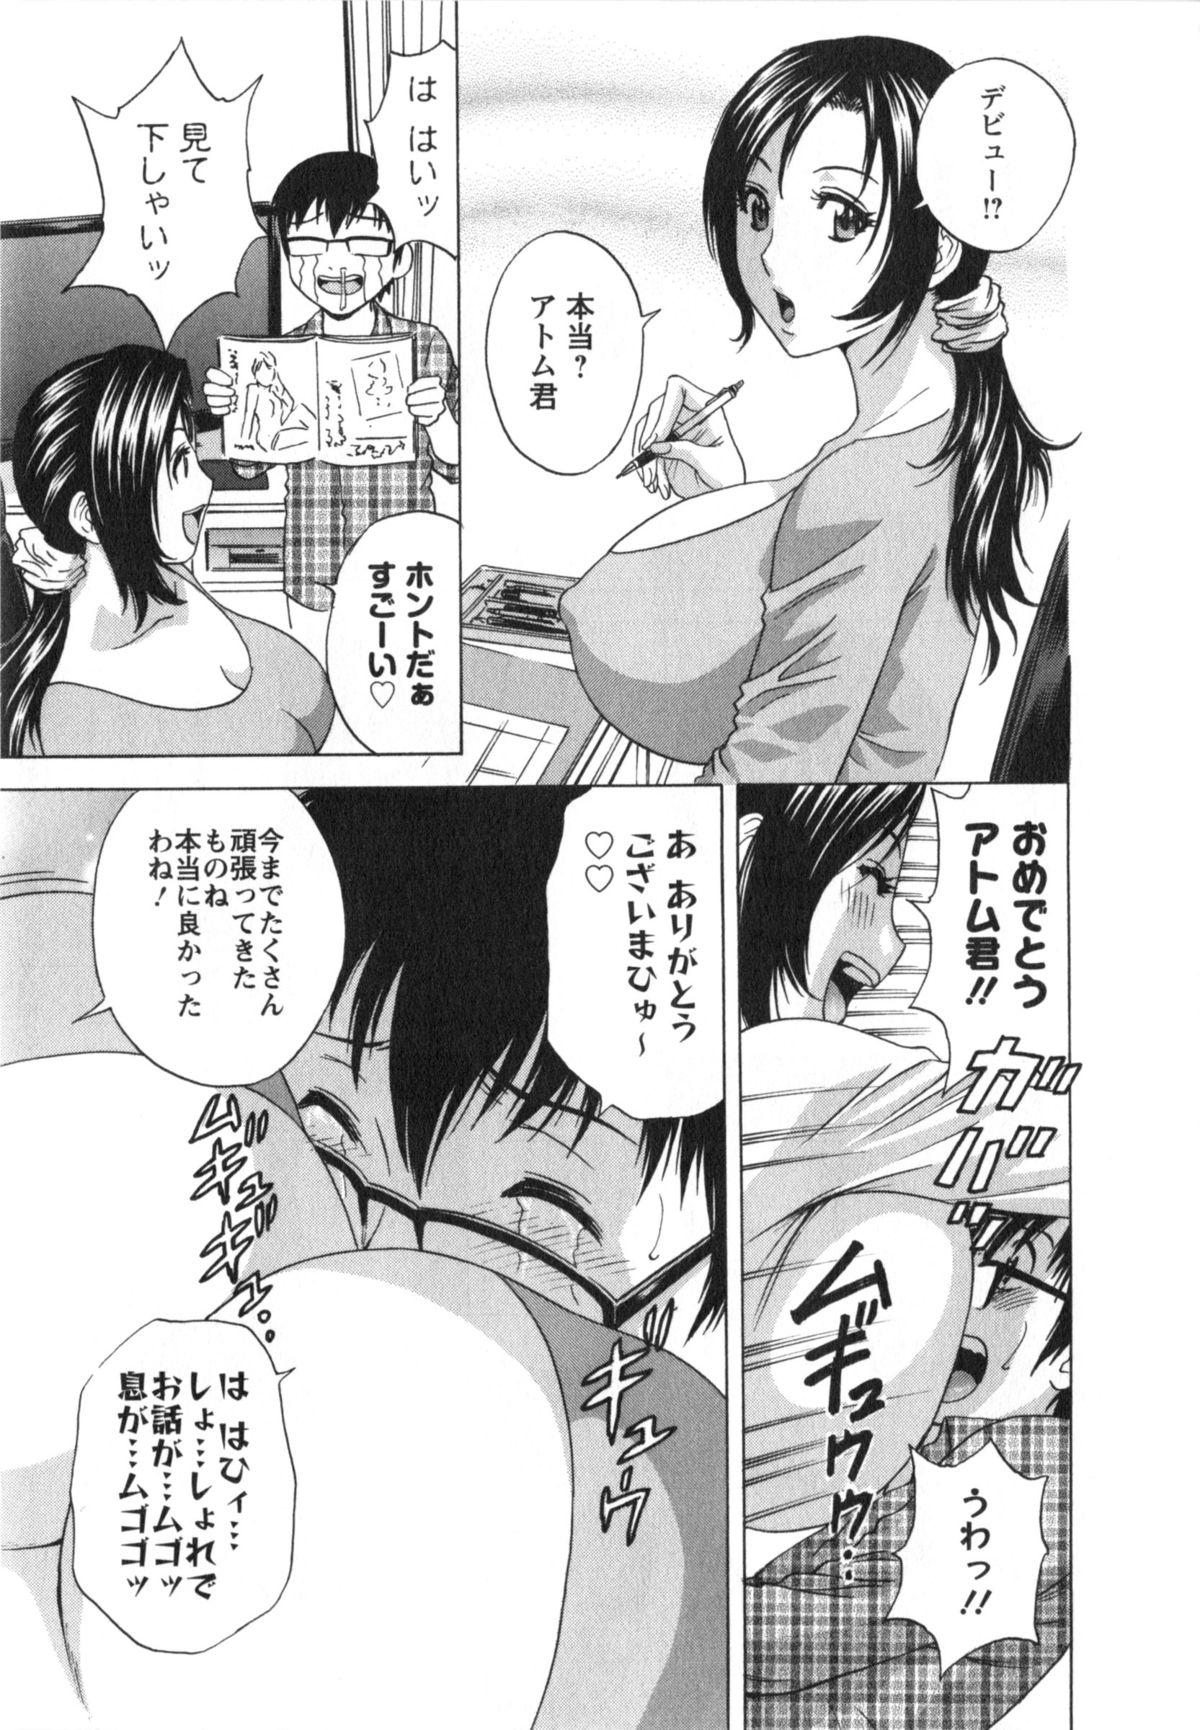 Manga no youna Hitozuma to no Hibi - Days with Married Women such as Comics. 173